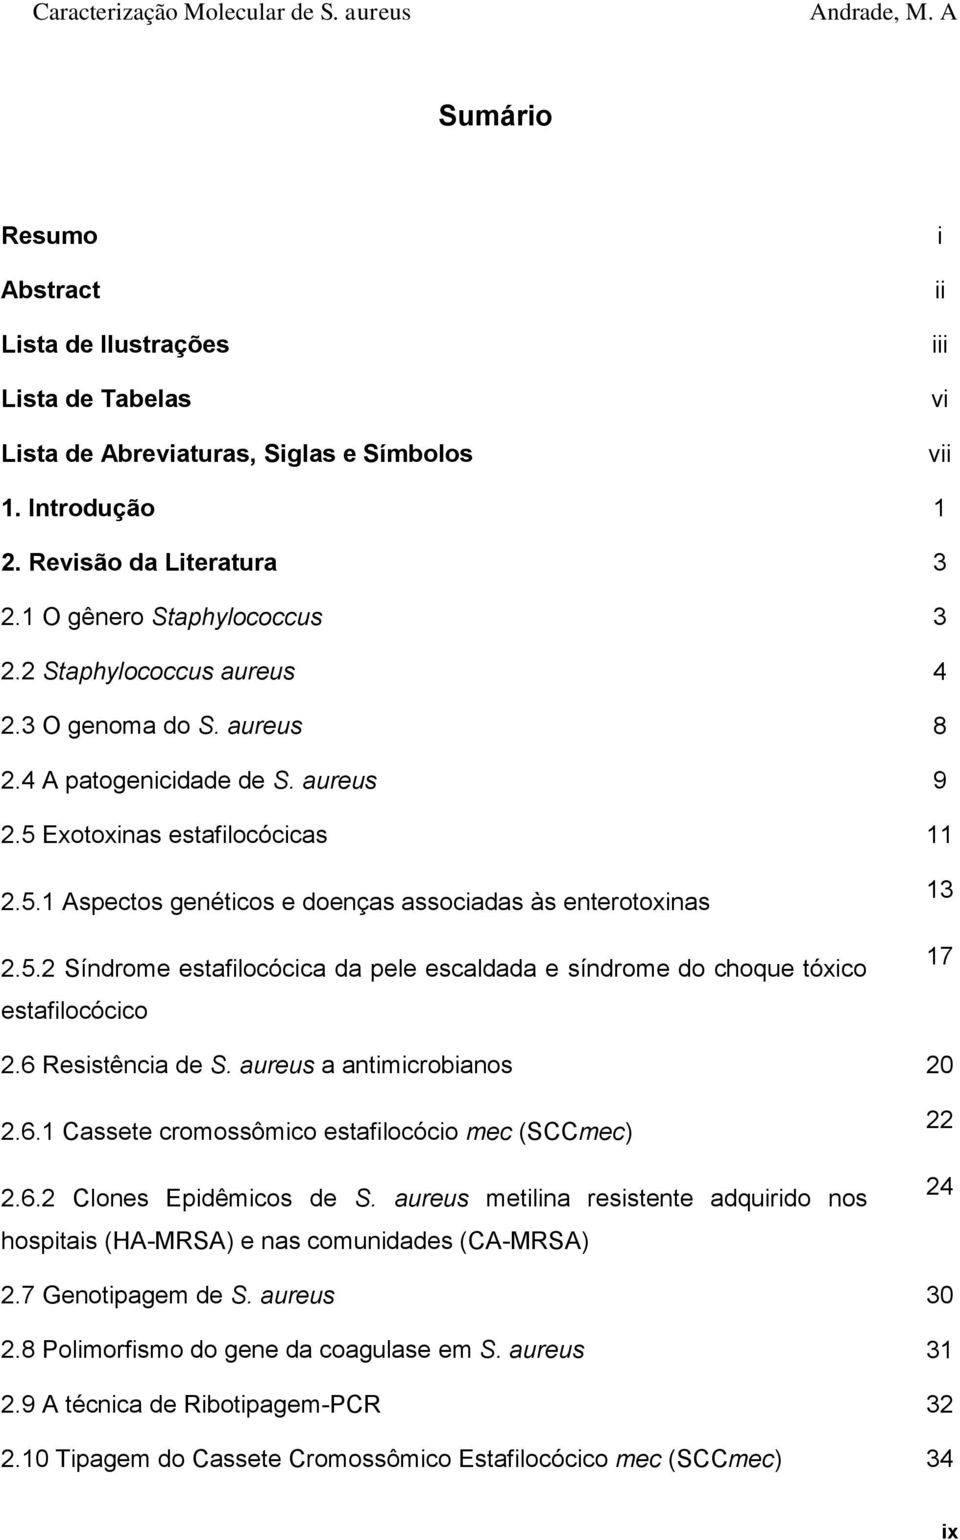 6 Resistência de S. aureus a antimicrobianos 20 2.6.1 Cassete cromossômico estafilocócio mec (SCCmec) 2.6.2 Clones Epidêmicos de S.